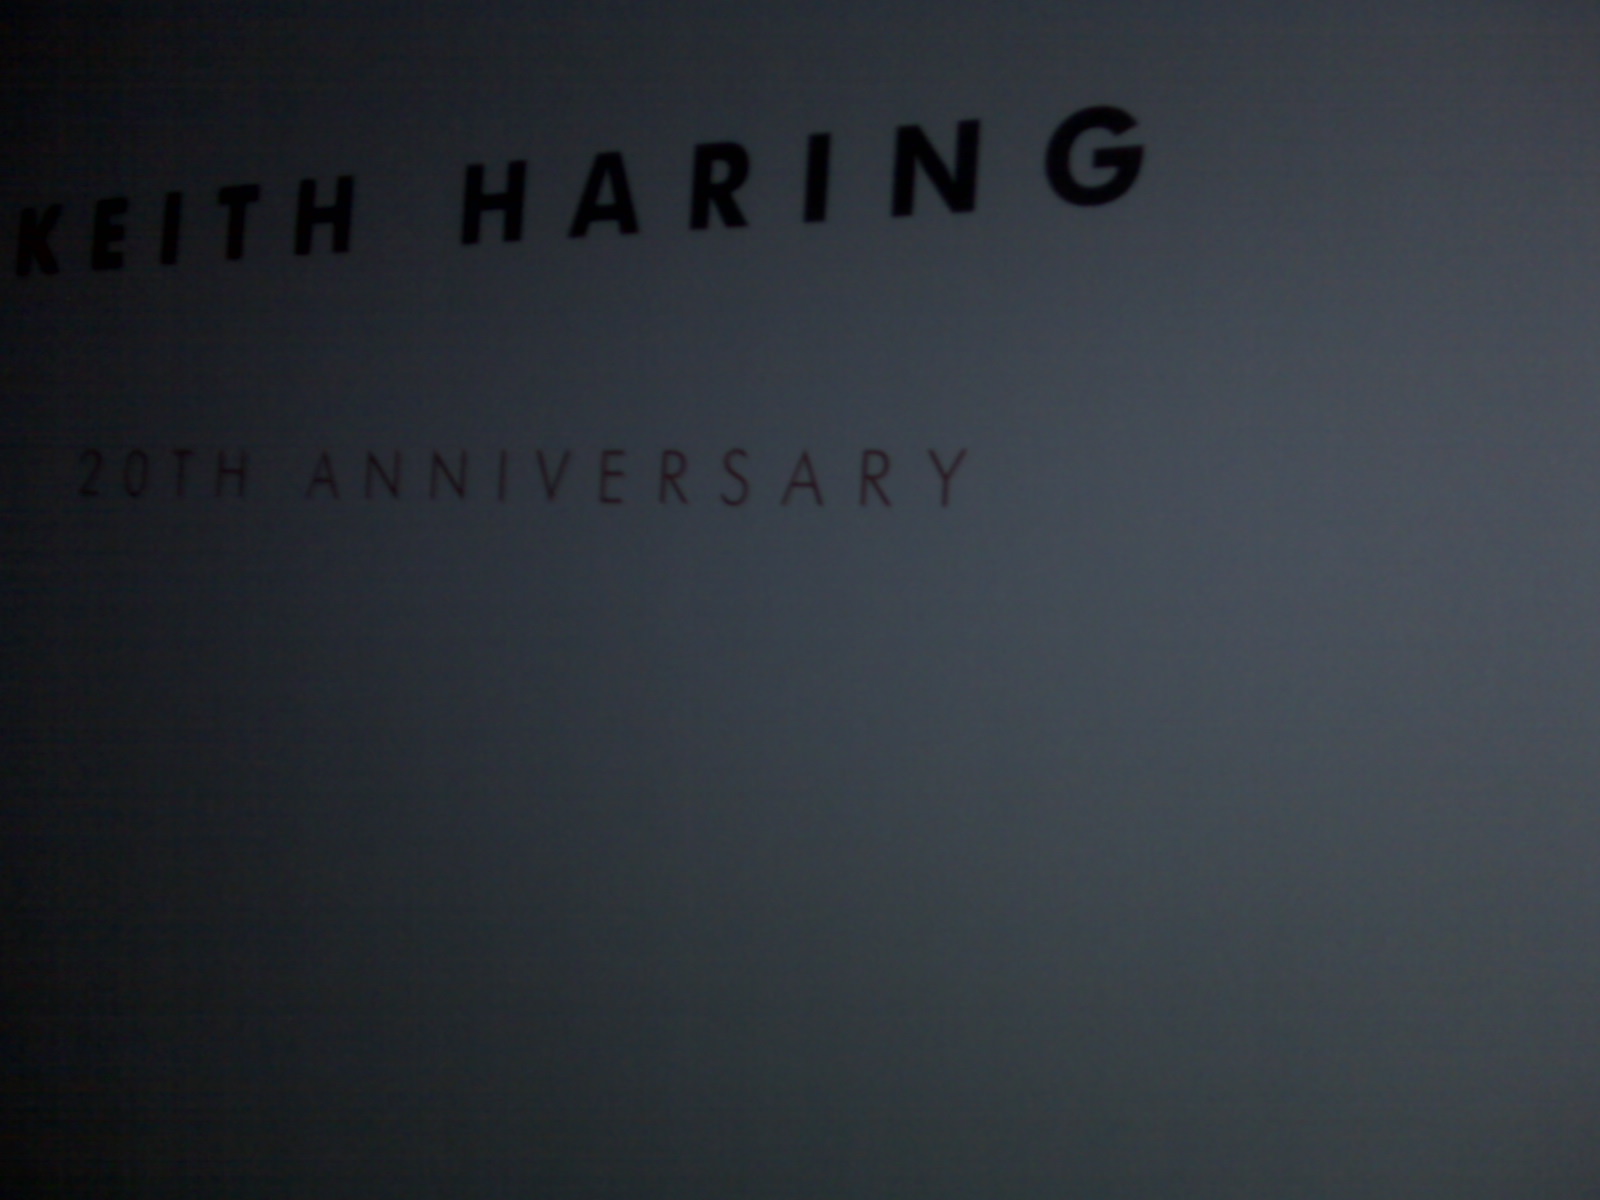 Keith Haring 20th Anniversary at Tony Shafrazi